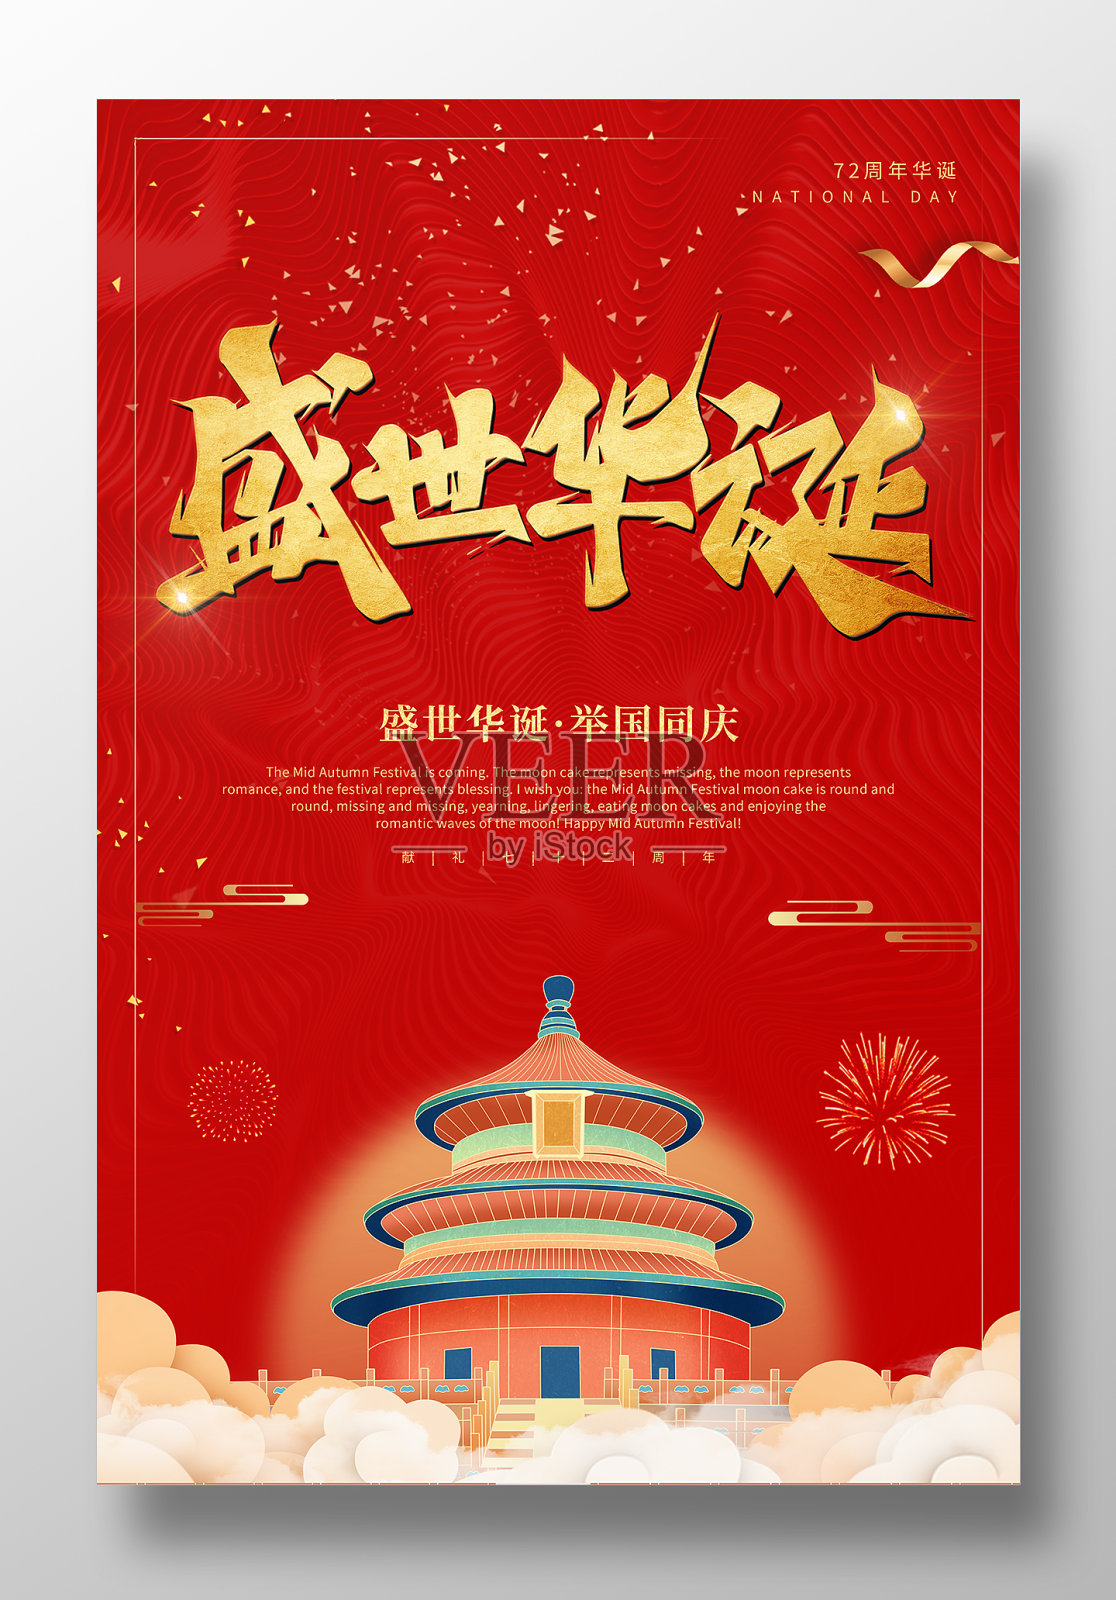 红色创意盛世华诞举国同庆国庆节宣传海报设计模板素材